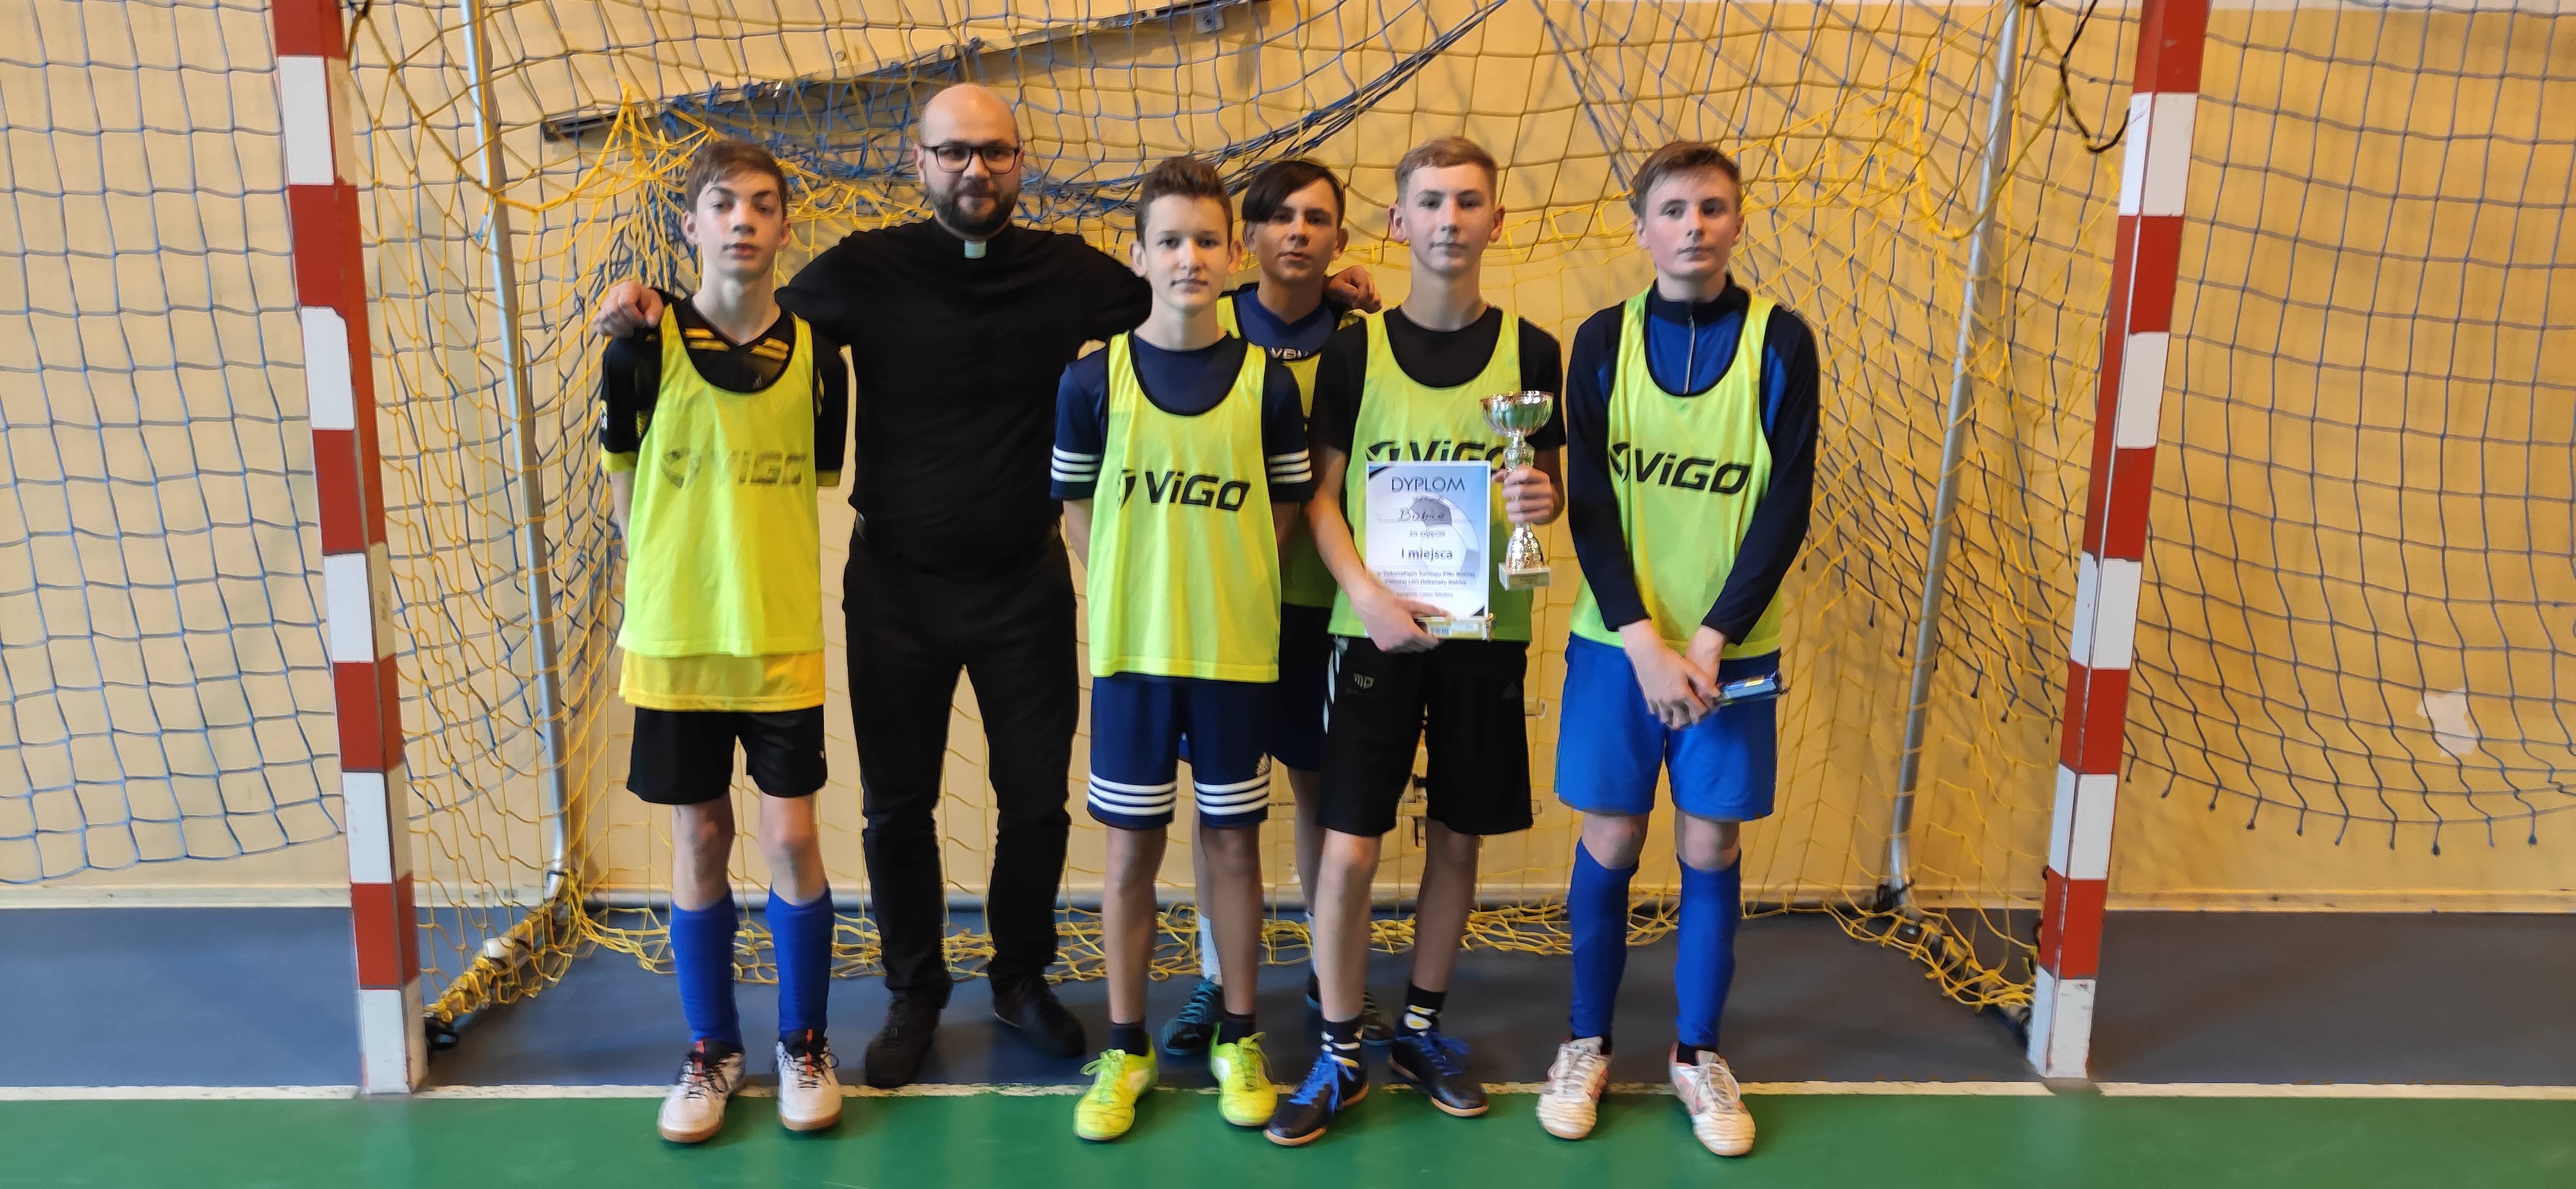 Nasza drużyna zajęła 1 miejsce w kategorii Lektor Młodszy (o wygranej zadecydowały rzuty karne) - awans do rozgrywek rejonowych.